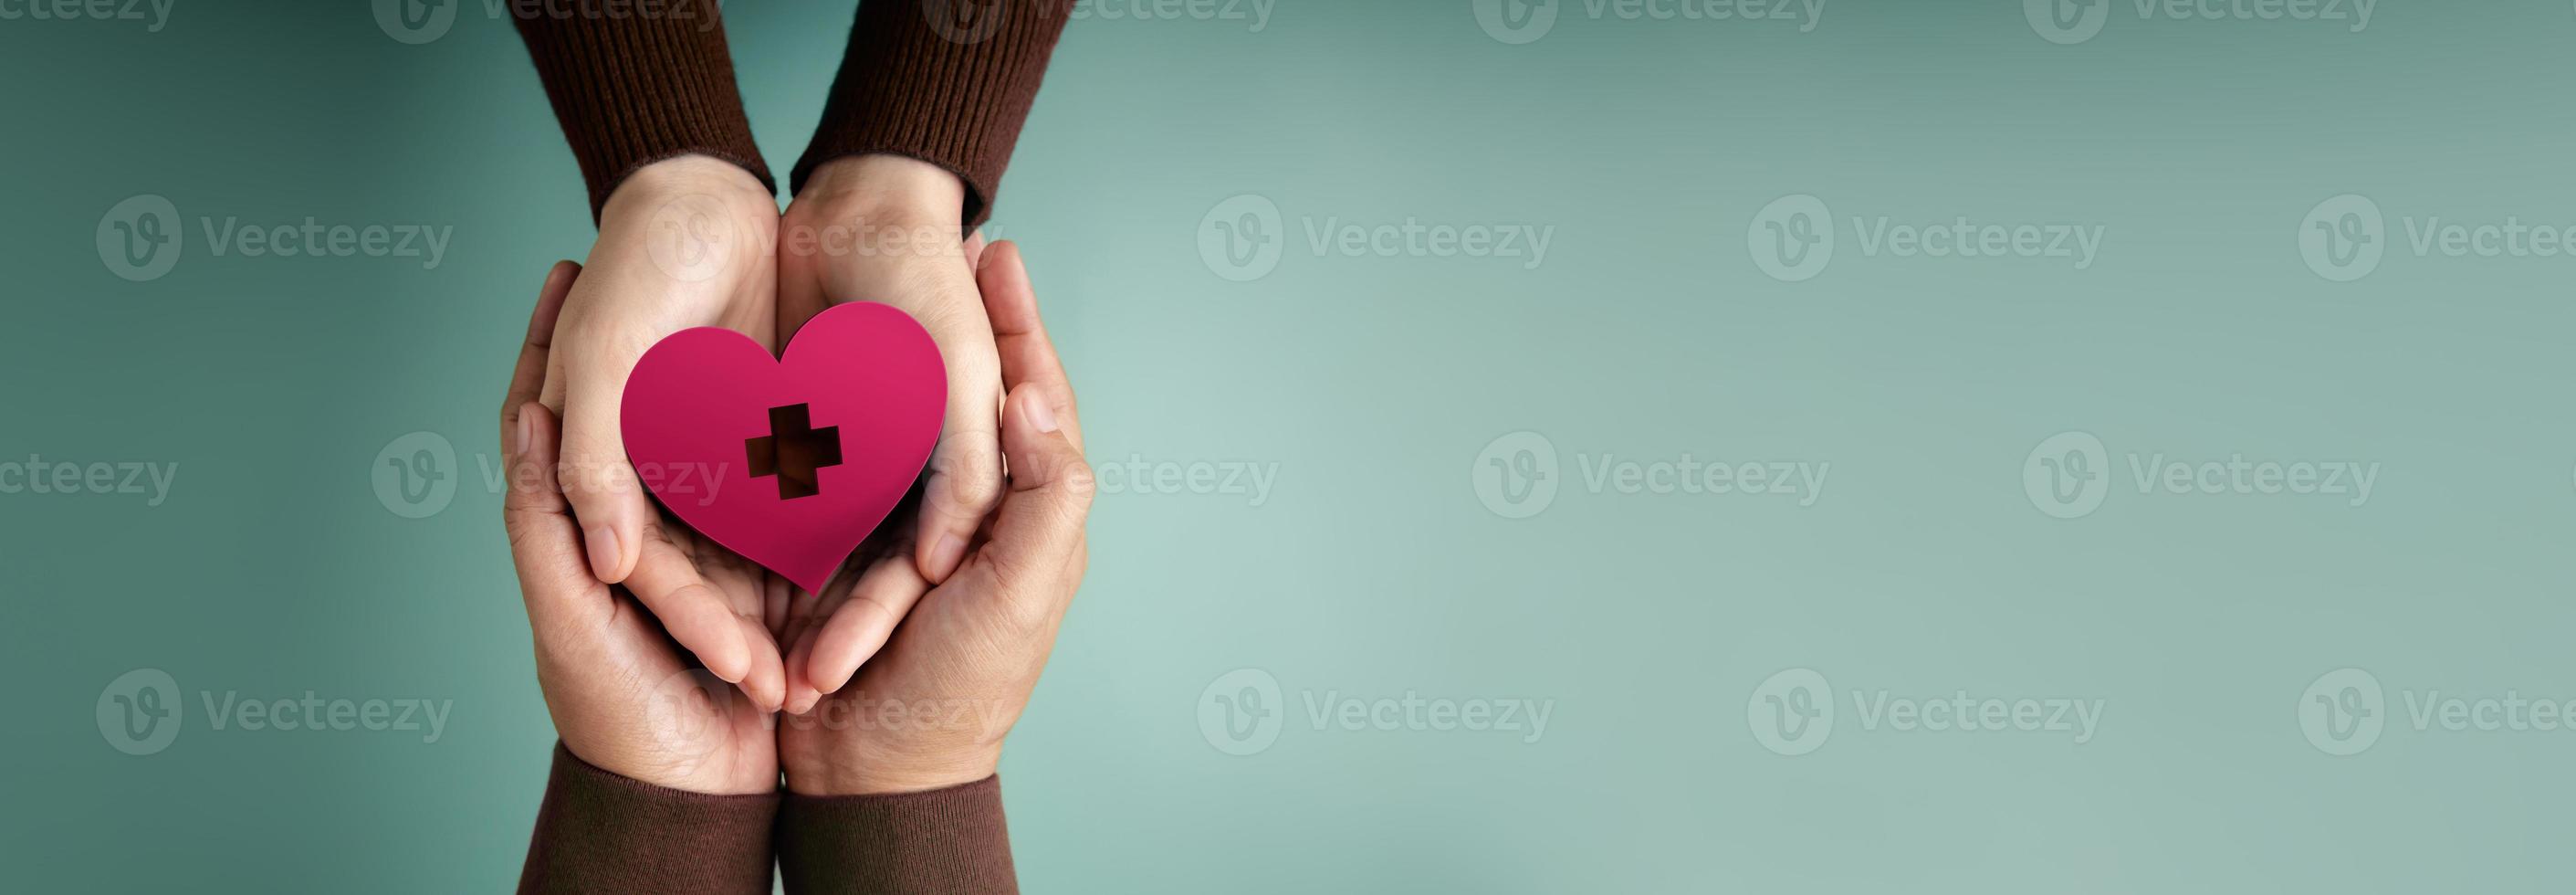 notions de don. mains de bénévoles embrassant une forme de coeur avec un signe de croix rouge ensemble. l'amour, les soins de santé, les dons et la charité. vue de dessus photo